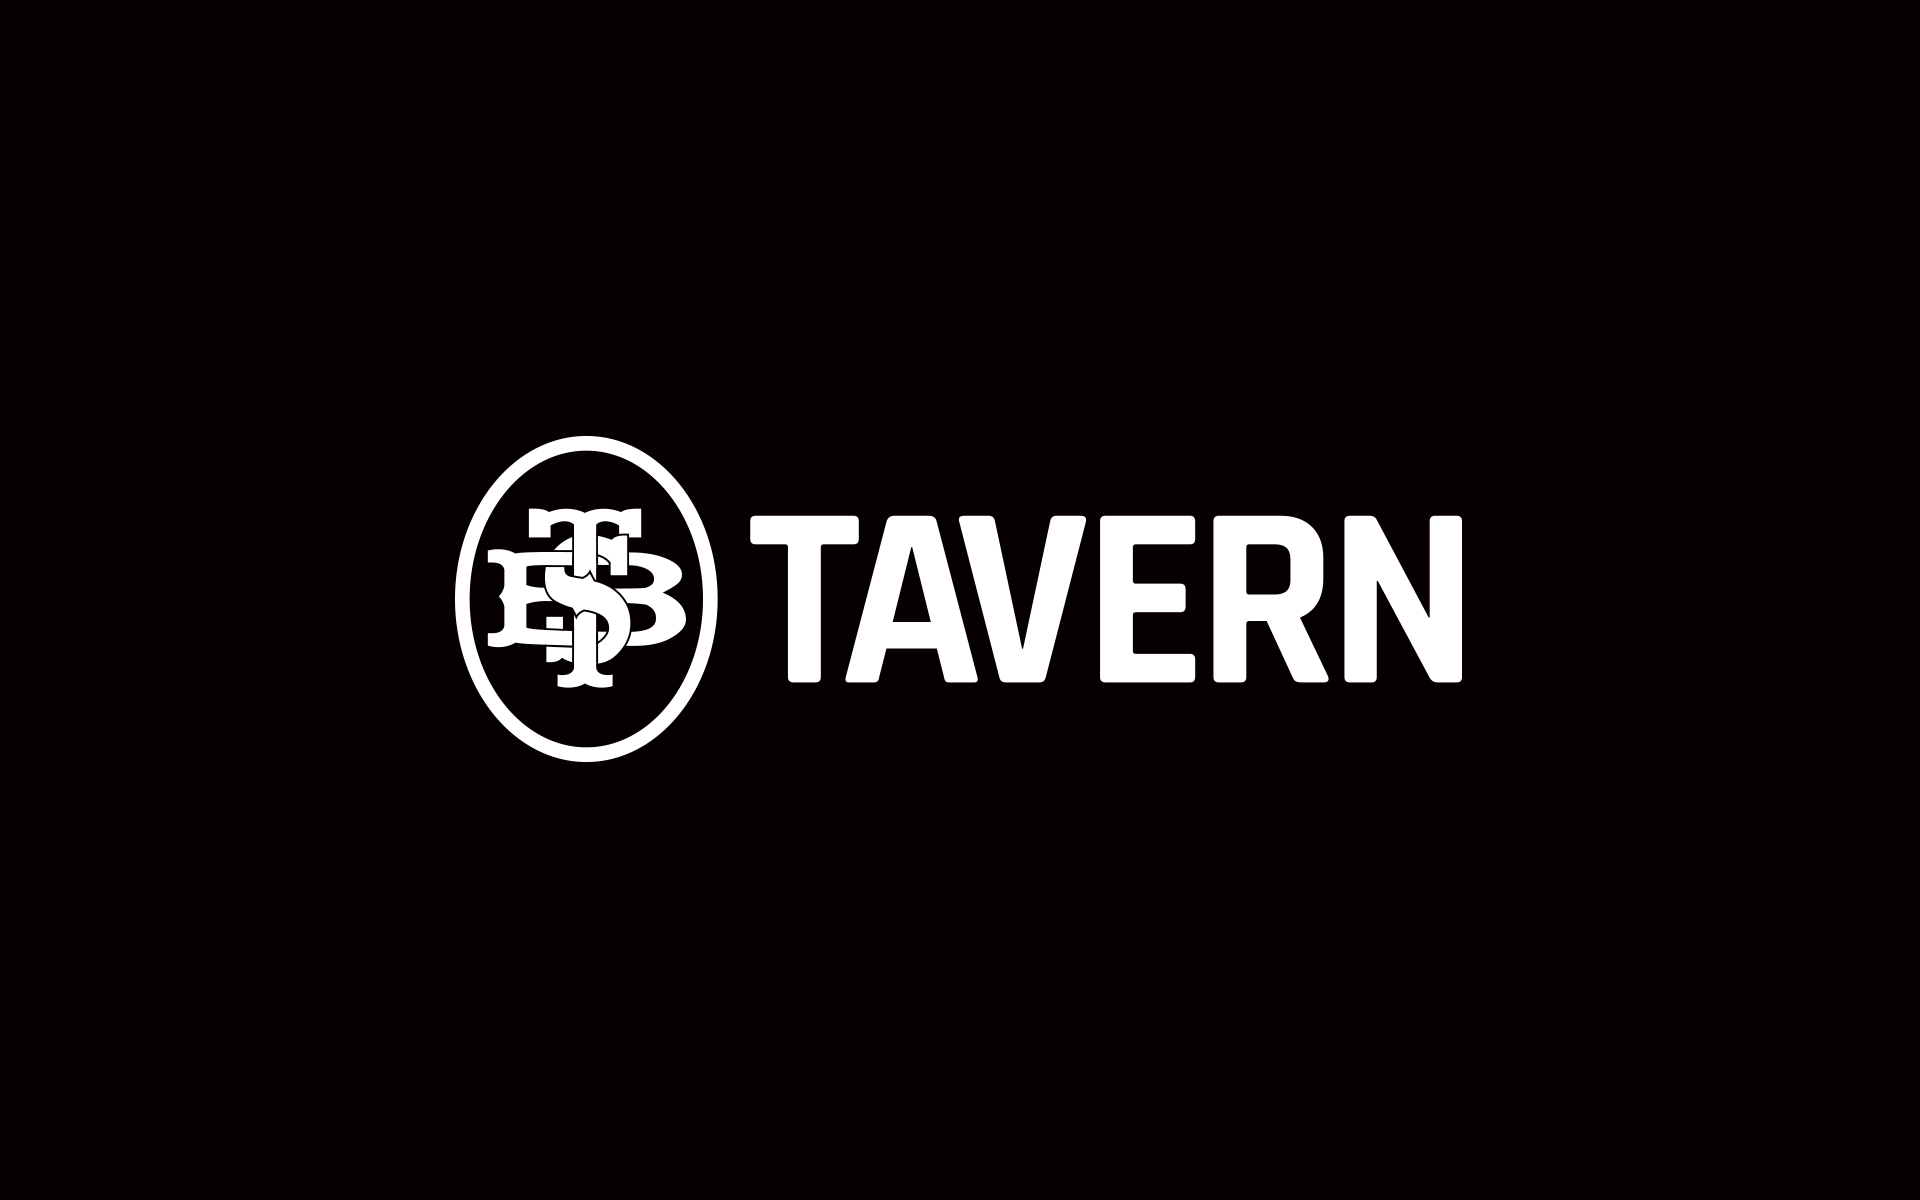 TBS Tavern